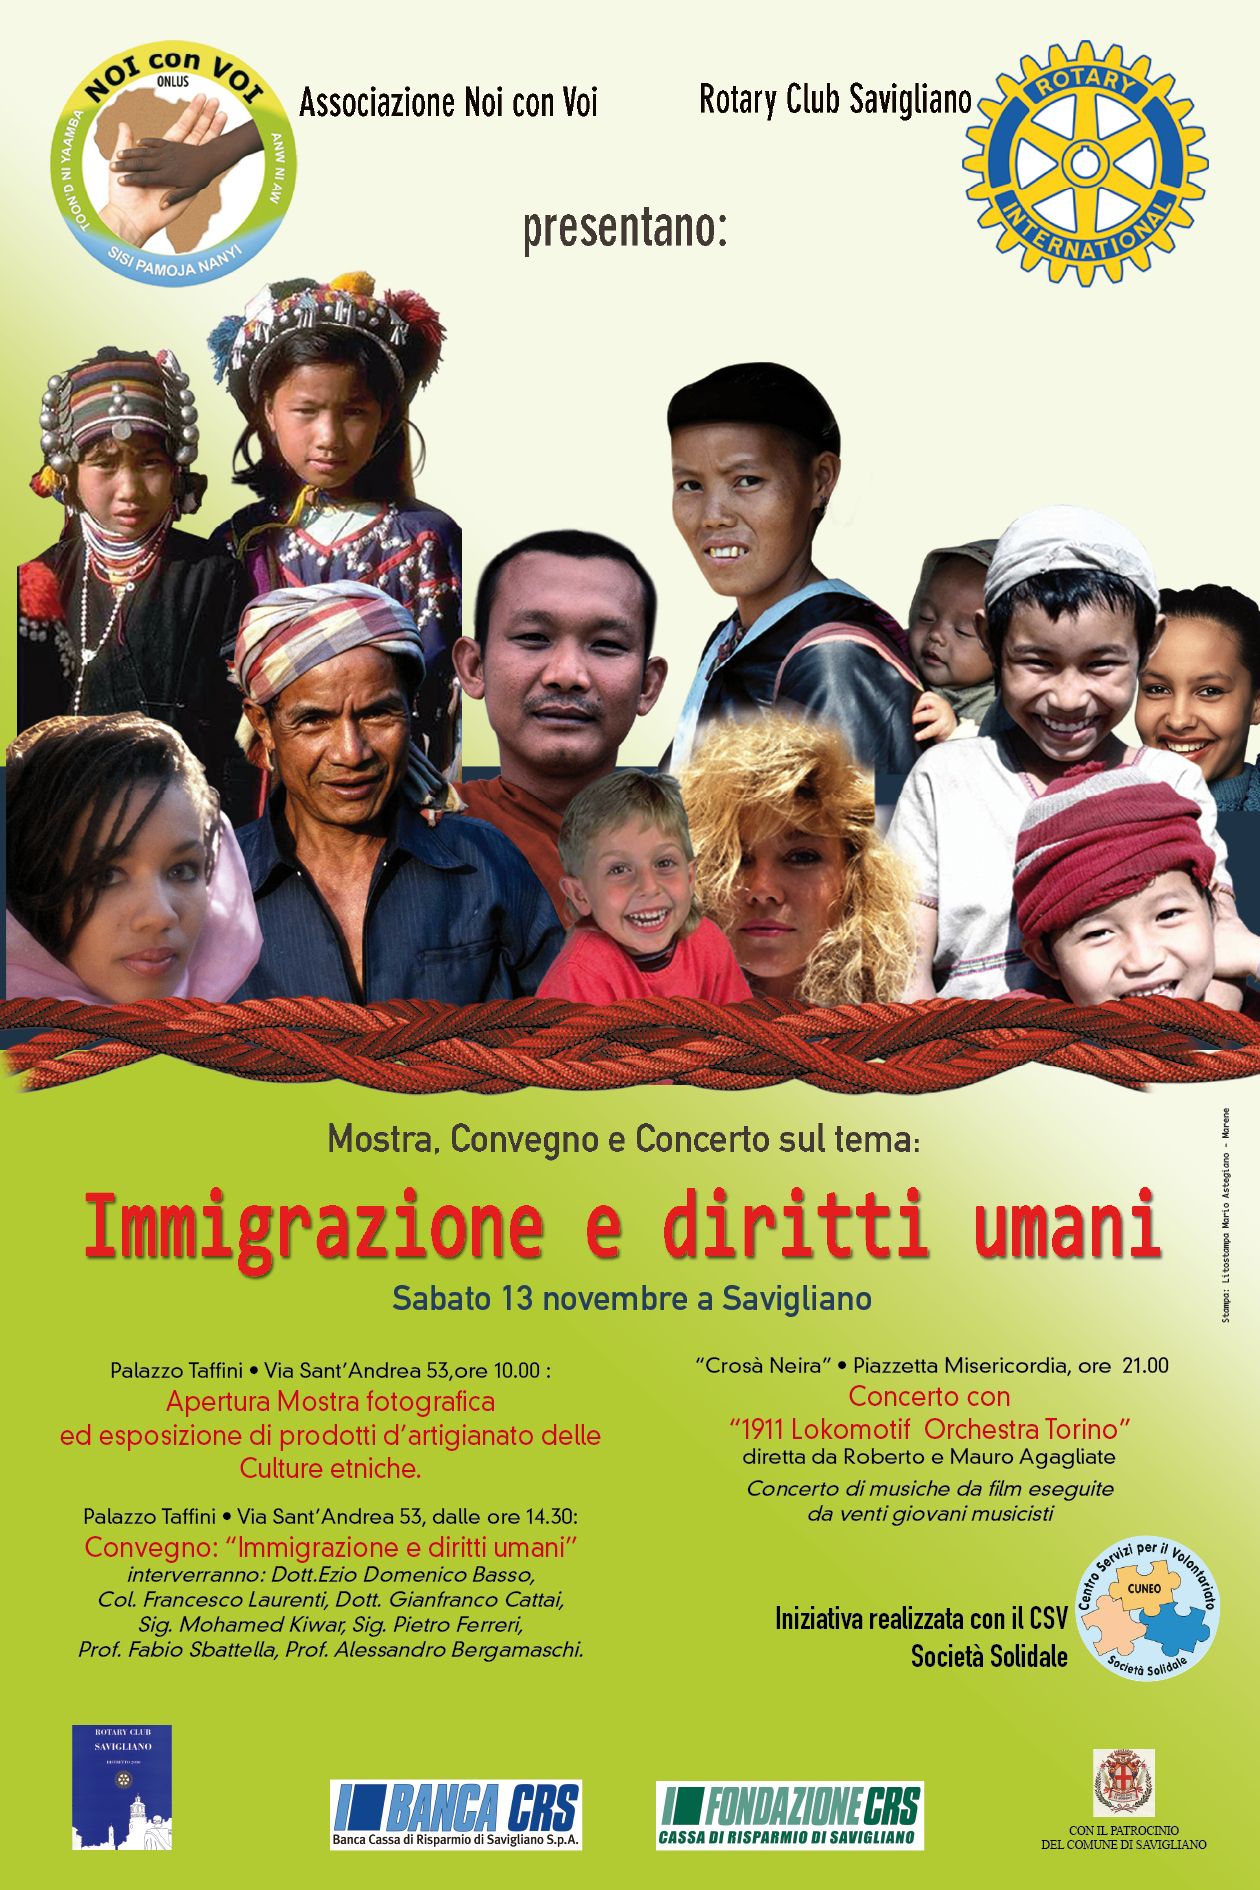 13 novembre 2010: Convegno sull'immigrazione "Immigrazione e diritti umani"